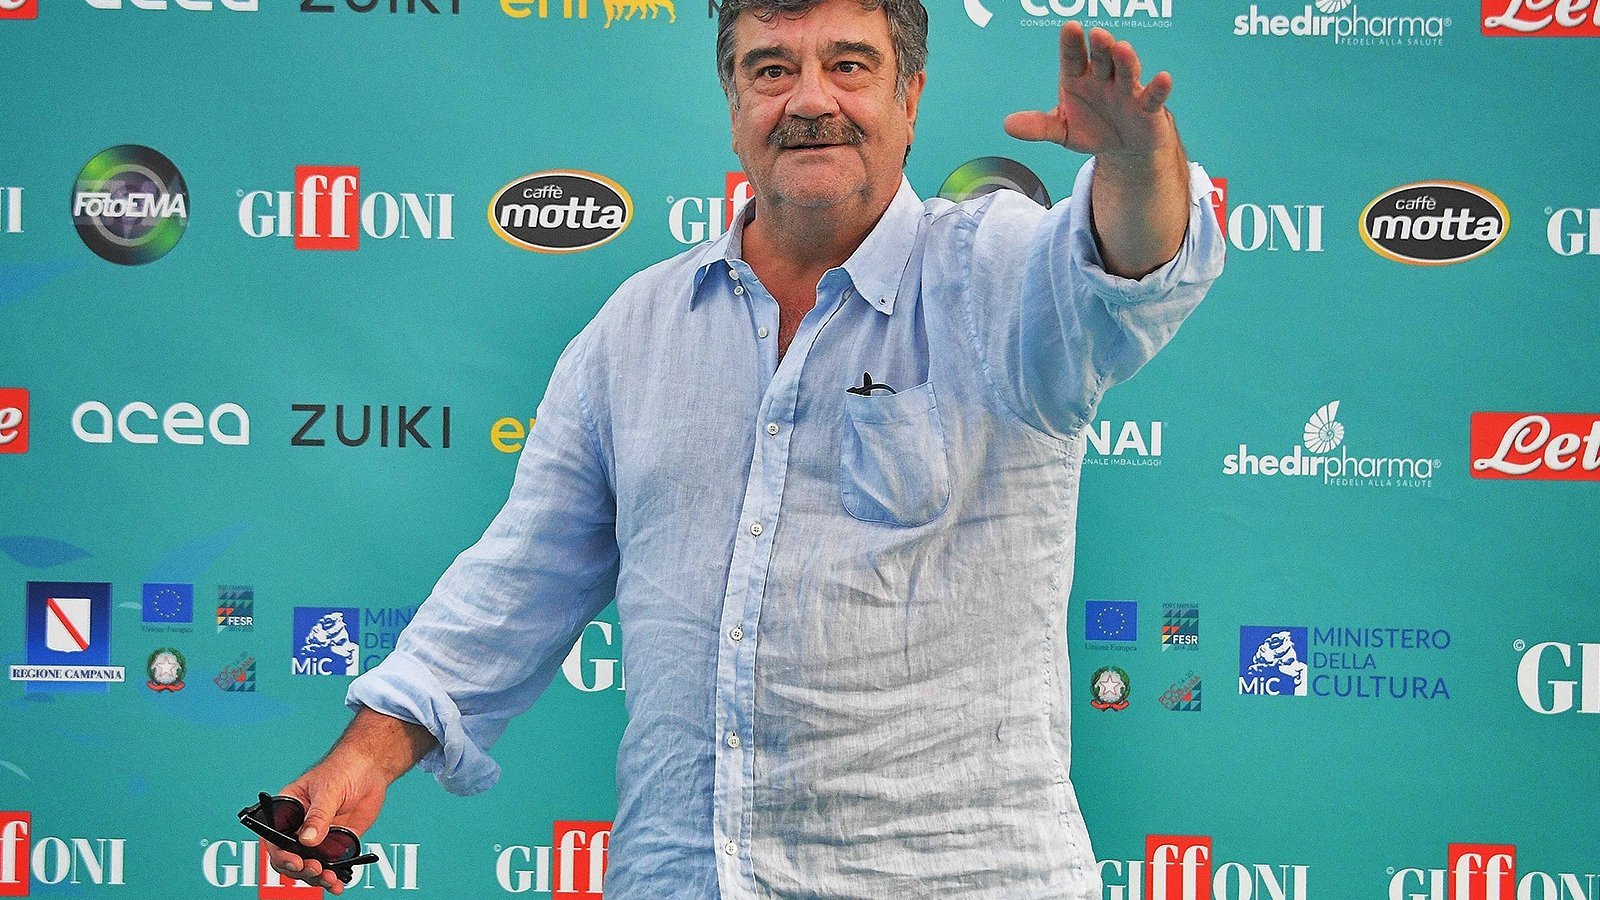 Francesco Pannofino a Giffoni: “I Cinepanettoni? Io continuerei questa tradizione!”